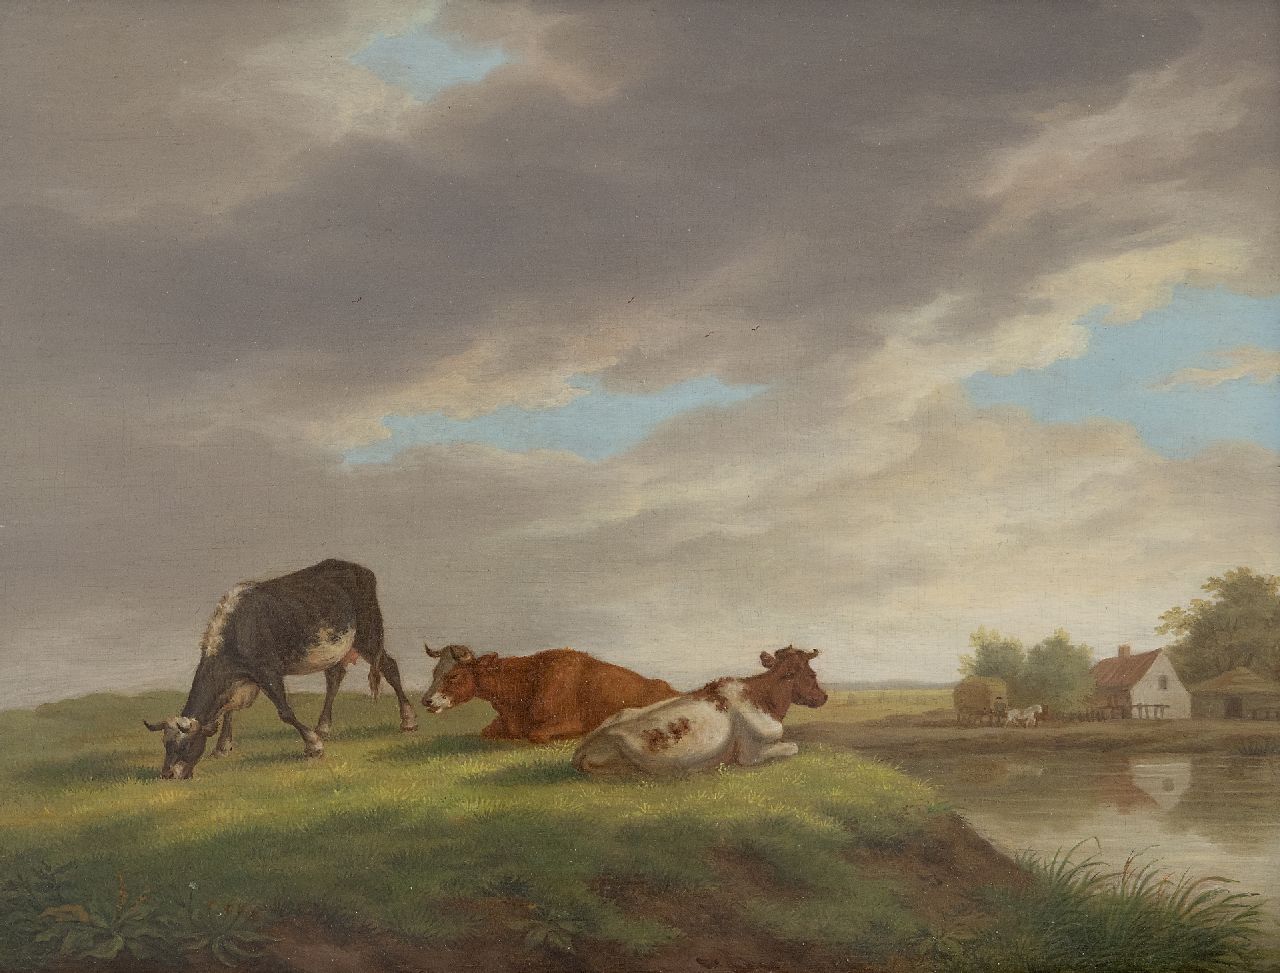 Burgh H.A. van der | Hendrik Adam van der Burgh | Schilderijen te koop aangeboden | Koeien in een landschap met boerderij, olieverf op paneel 20,4 x 26,3 cm, gesigneerd linksonder en gedateerd 1821